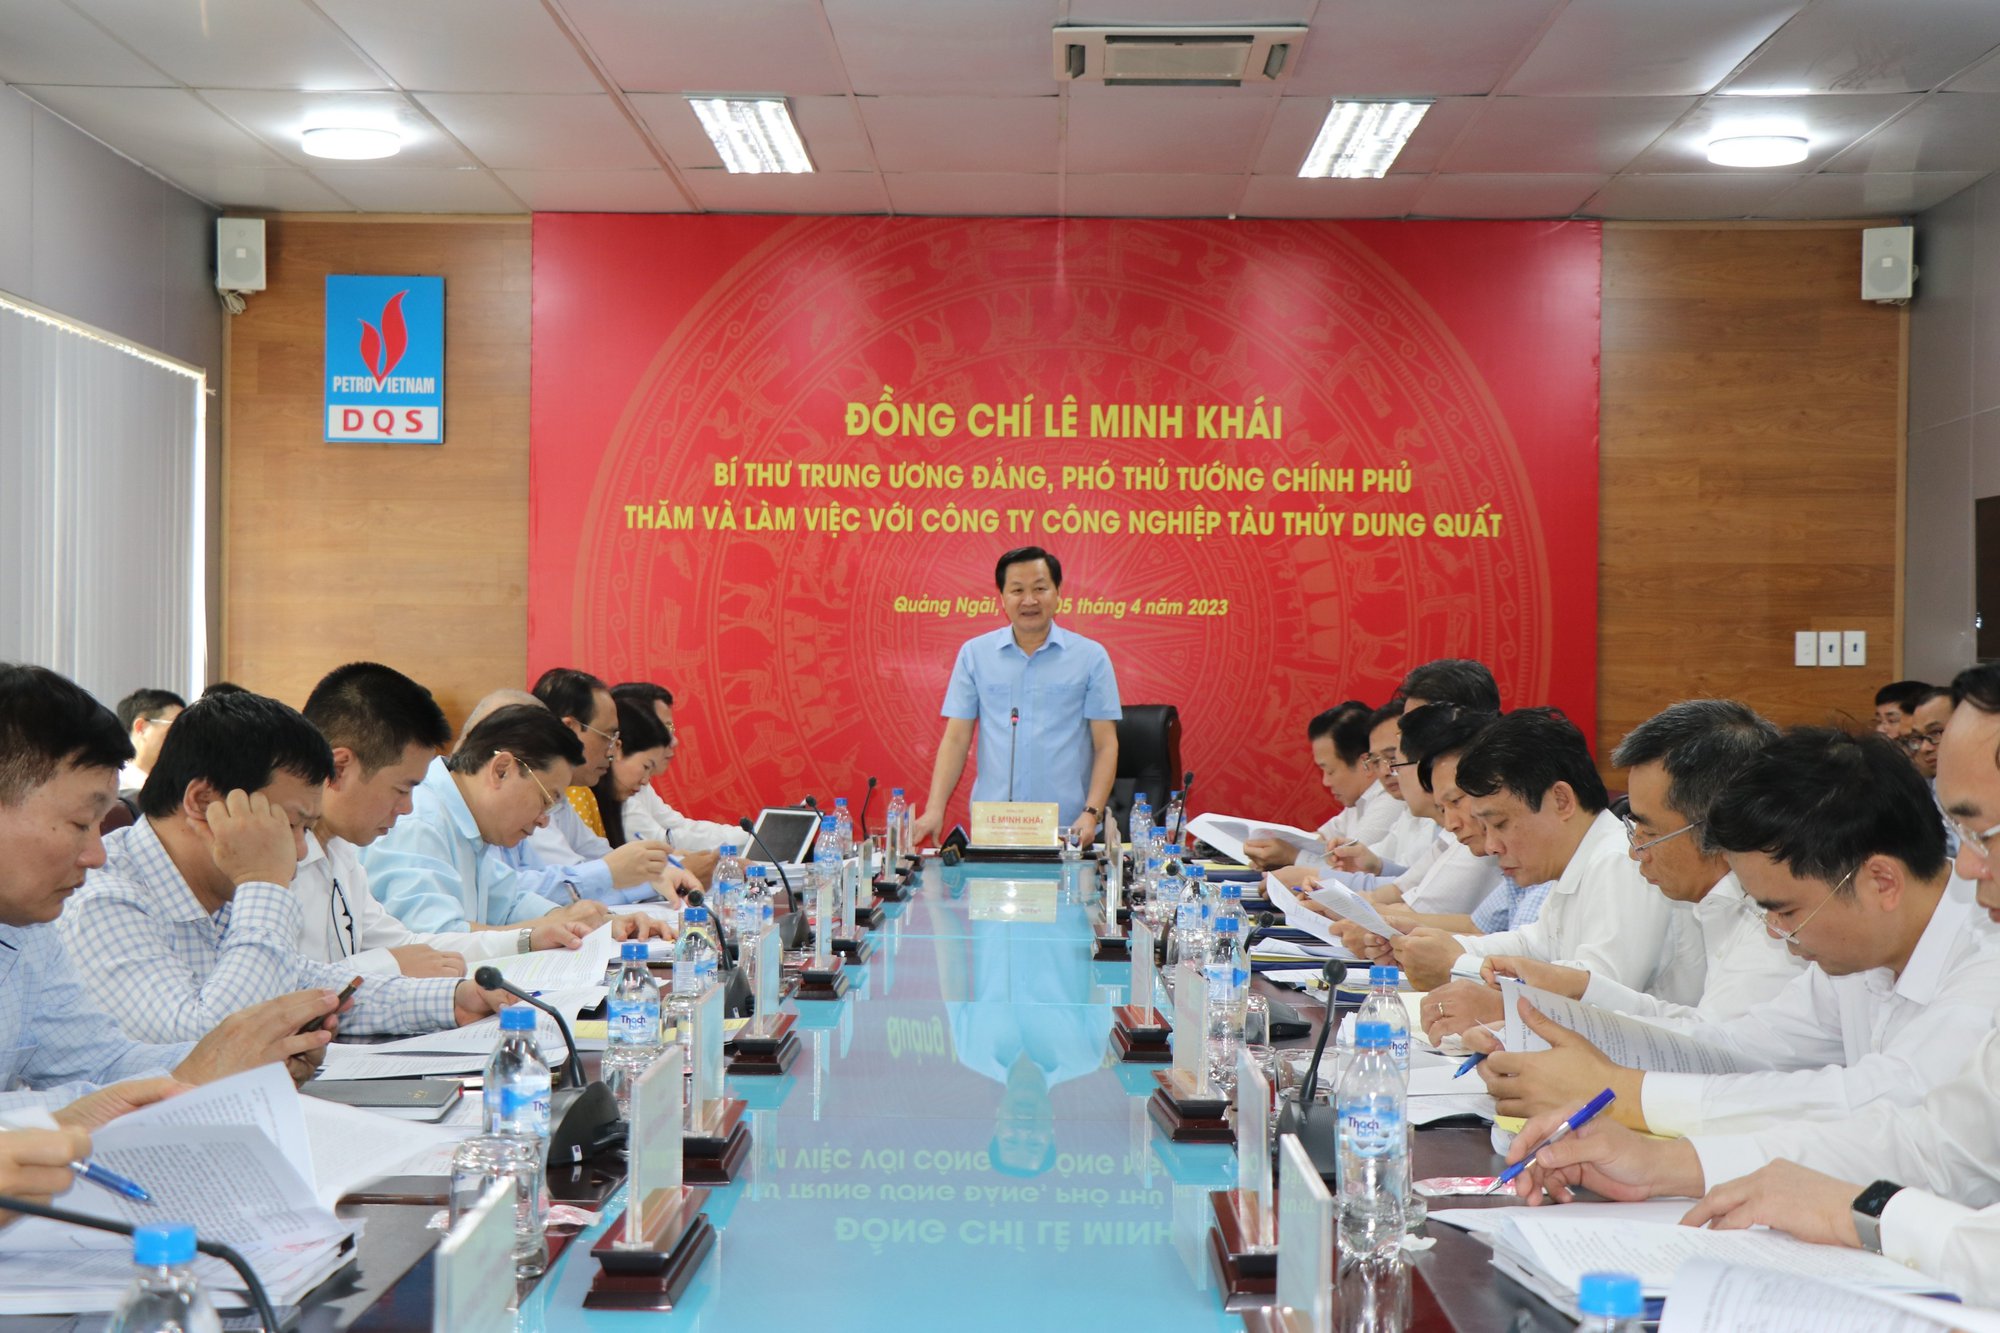 Phó Thủ tướng Chính phủ Lê Minh Khái làm việc với Công ty Công nghiệp tàu thủy Dung Quất - Ảnh 3.